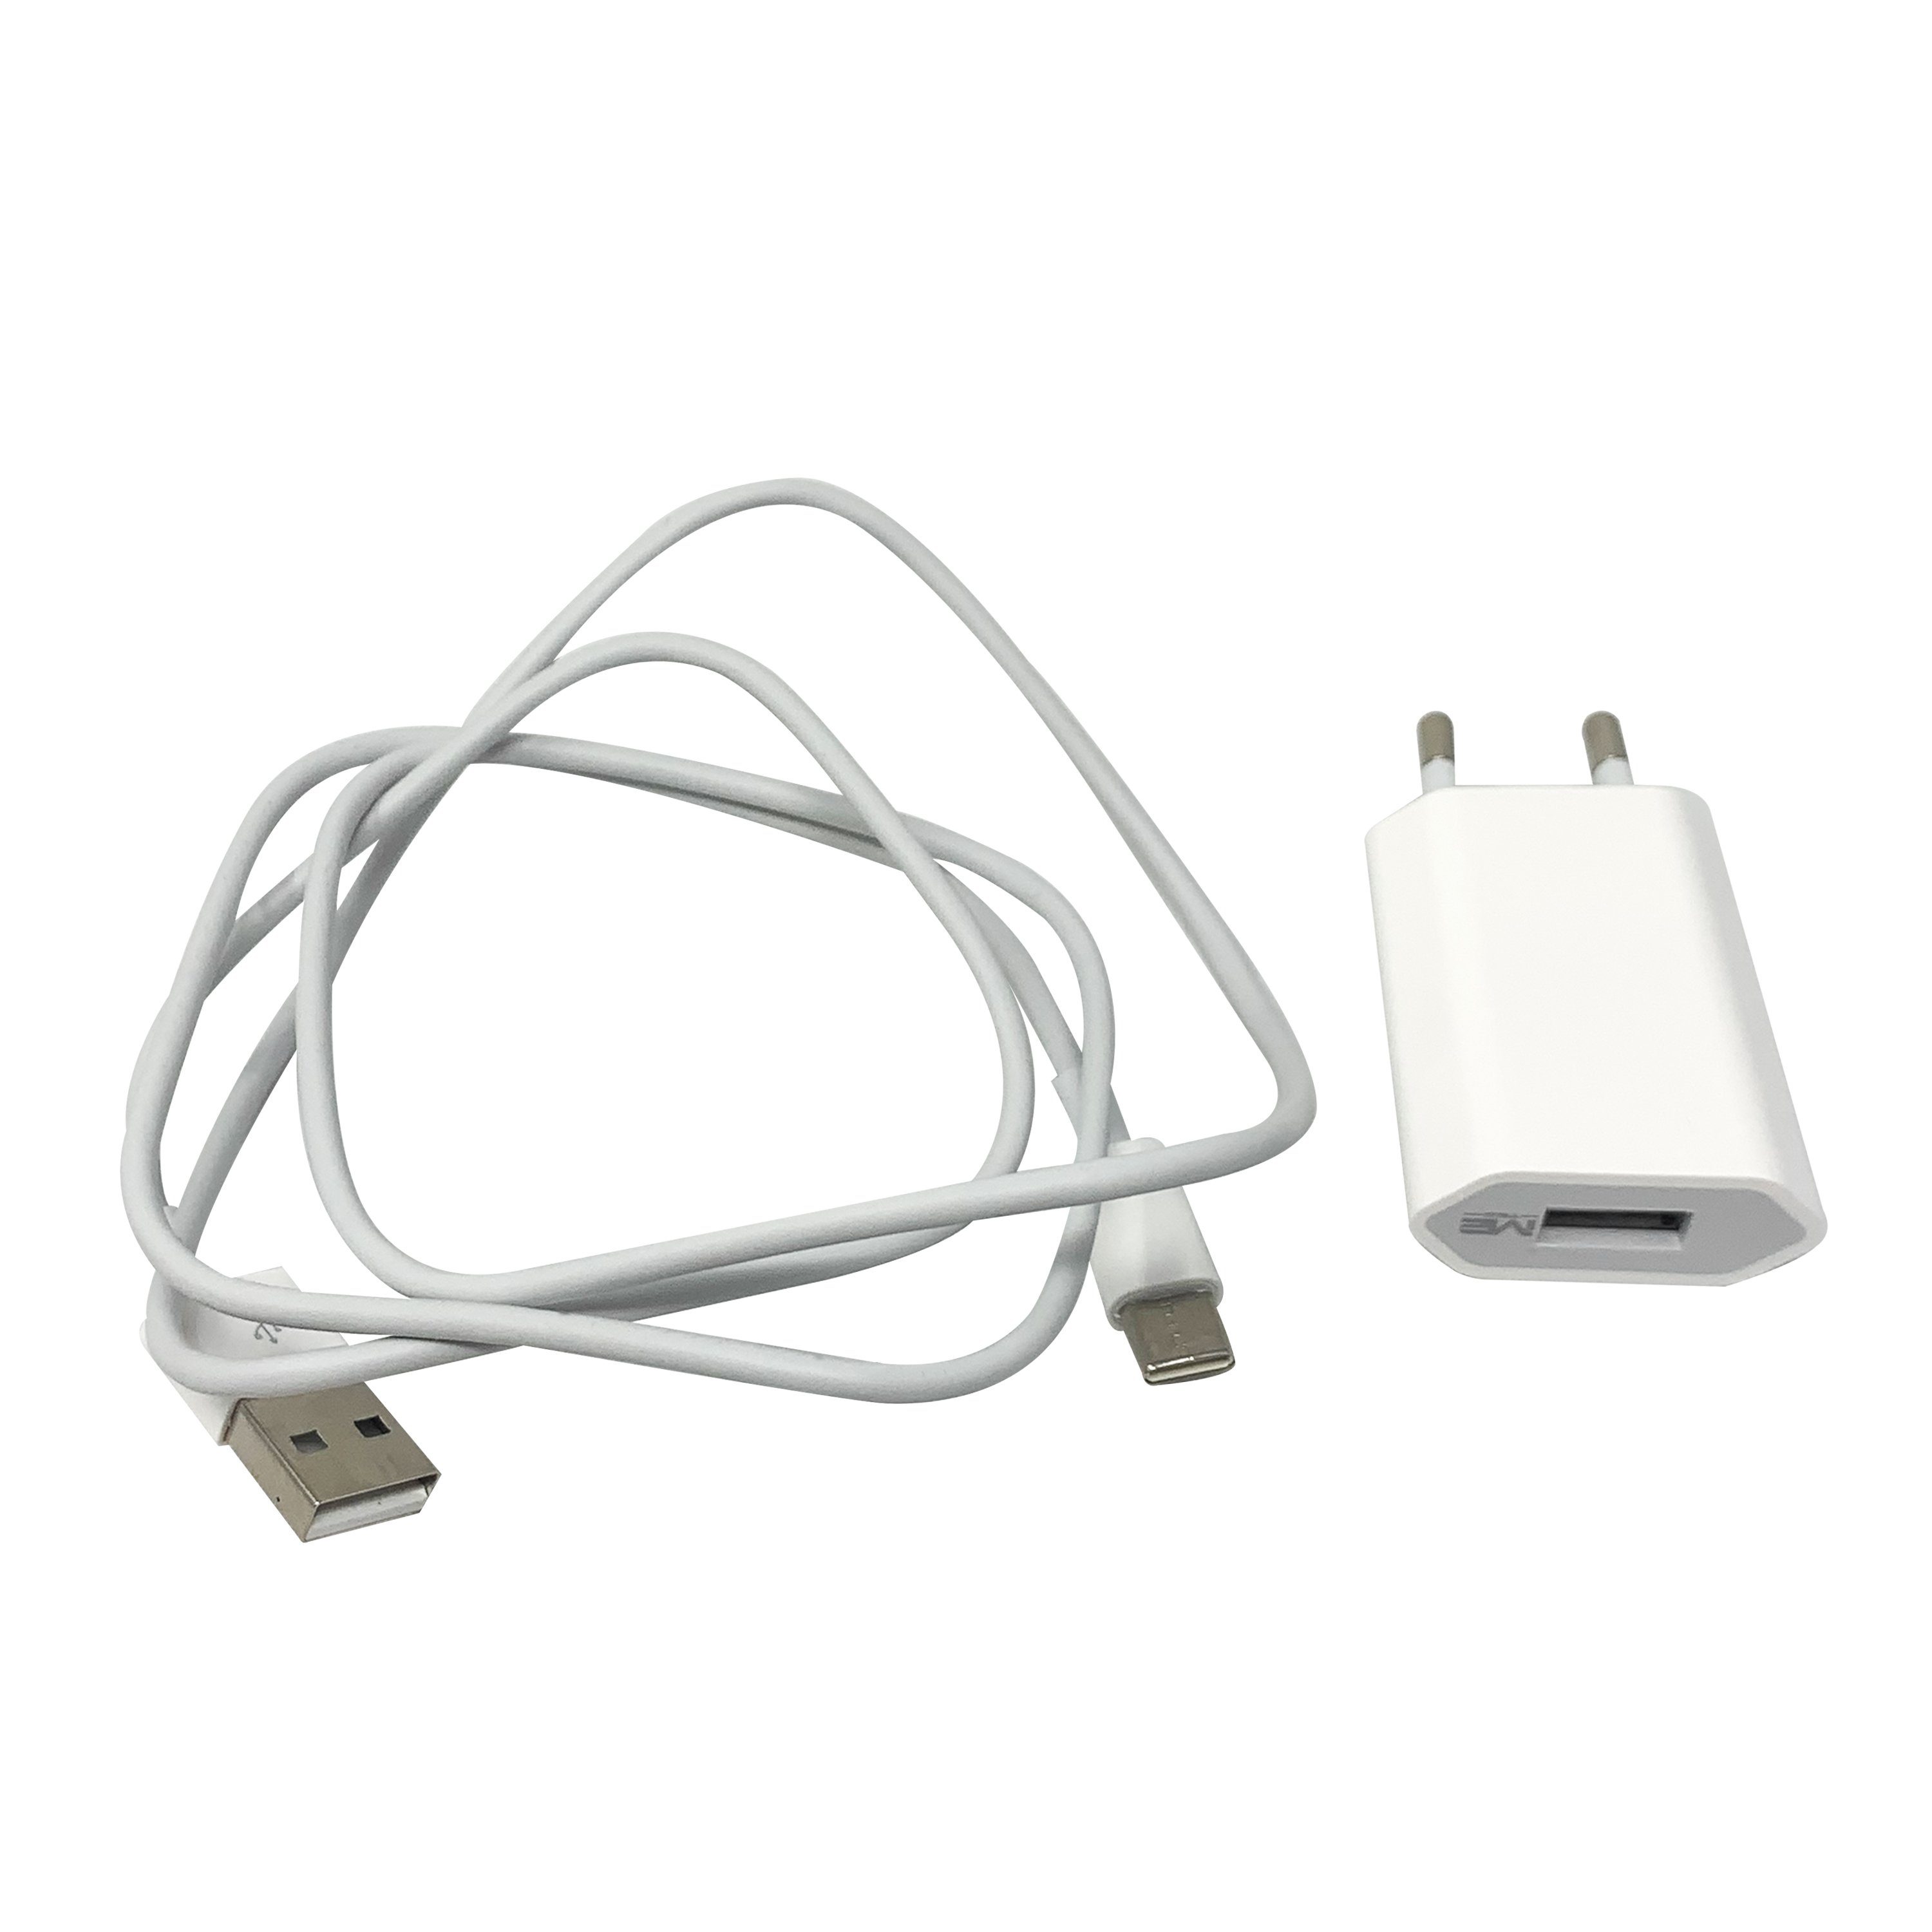 H-basics »USB-C Ladekabel 1 Meter - 1A, 5W, ABS für neue Handy modelle,  Samsung, Huawei, OnePlus« Smartphone-Ladegerät online kaufen | OTTO